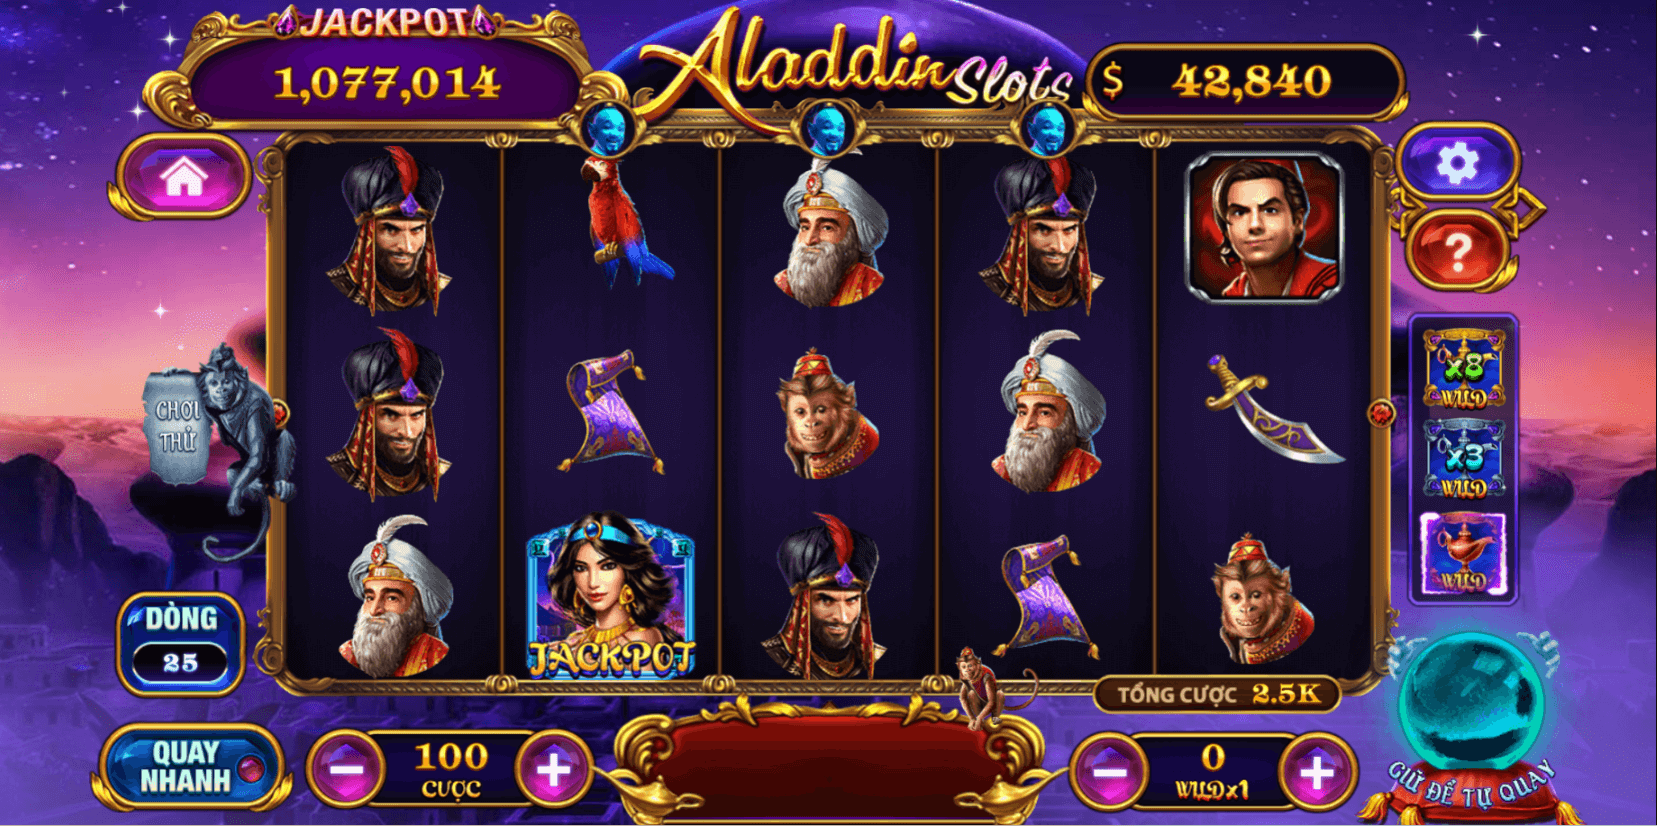 Lựa chọn thời điểm hợp lý là mẹo chơi nổ hũ Aladdin